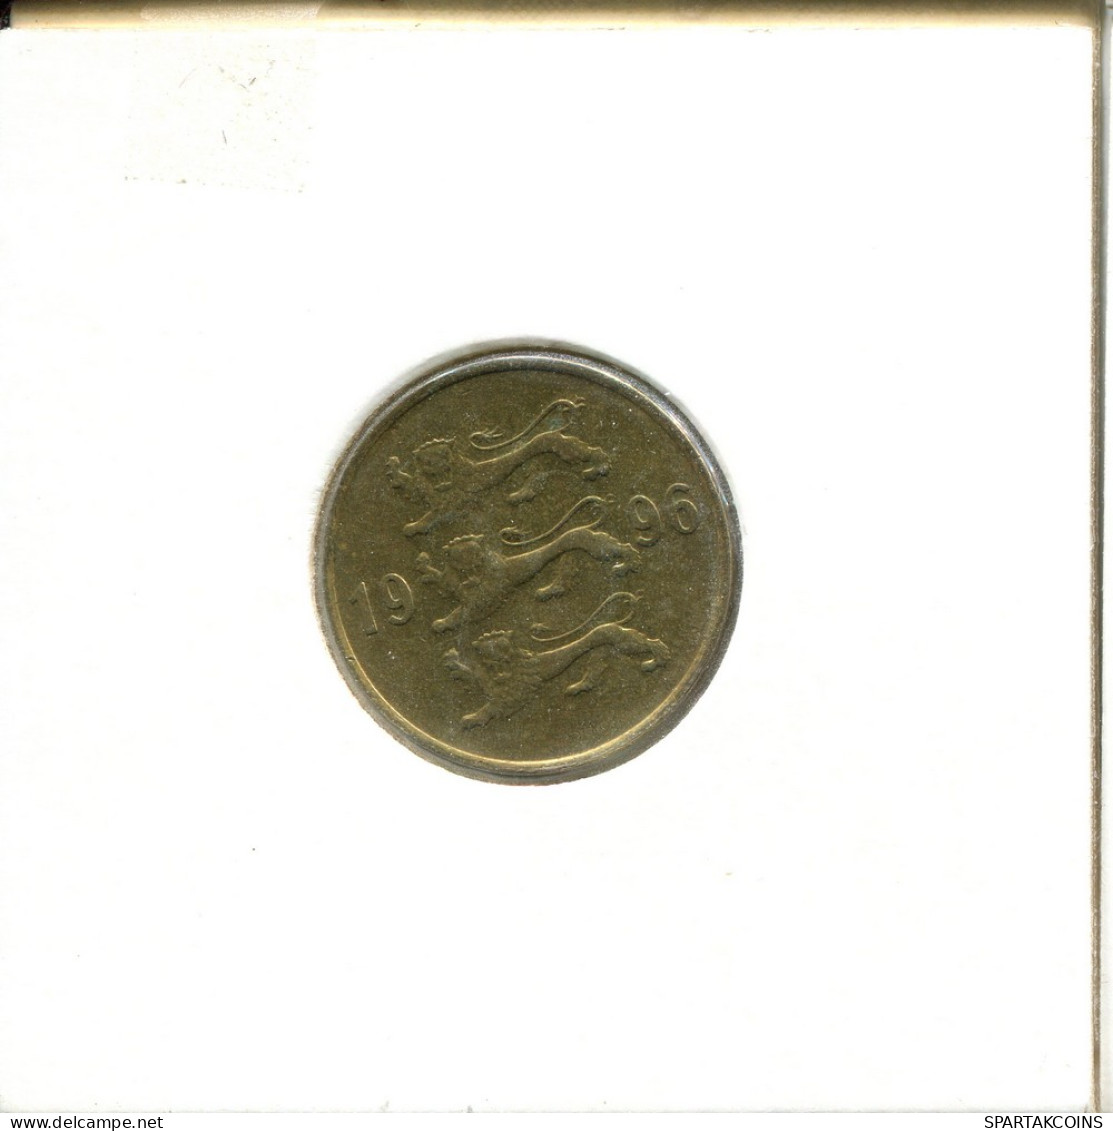 20 SENTI 1996 ESTONIA Moneda #AS682.E - Estonia